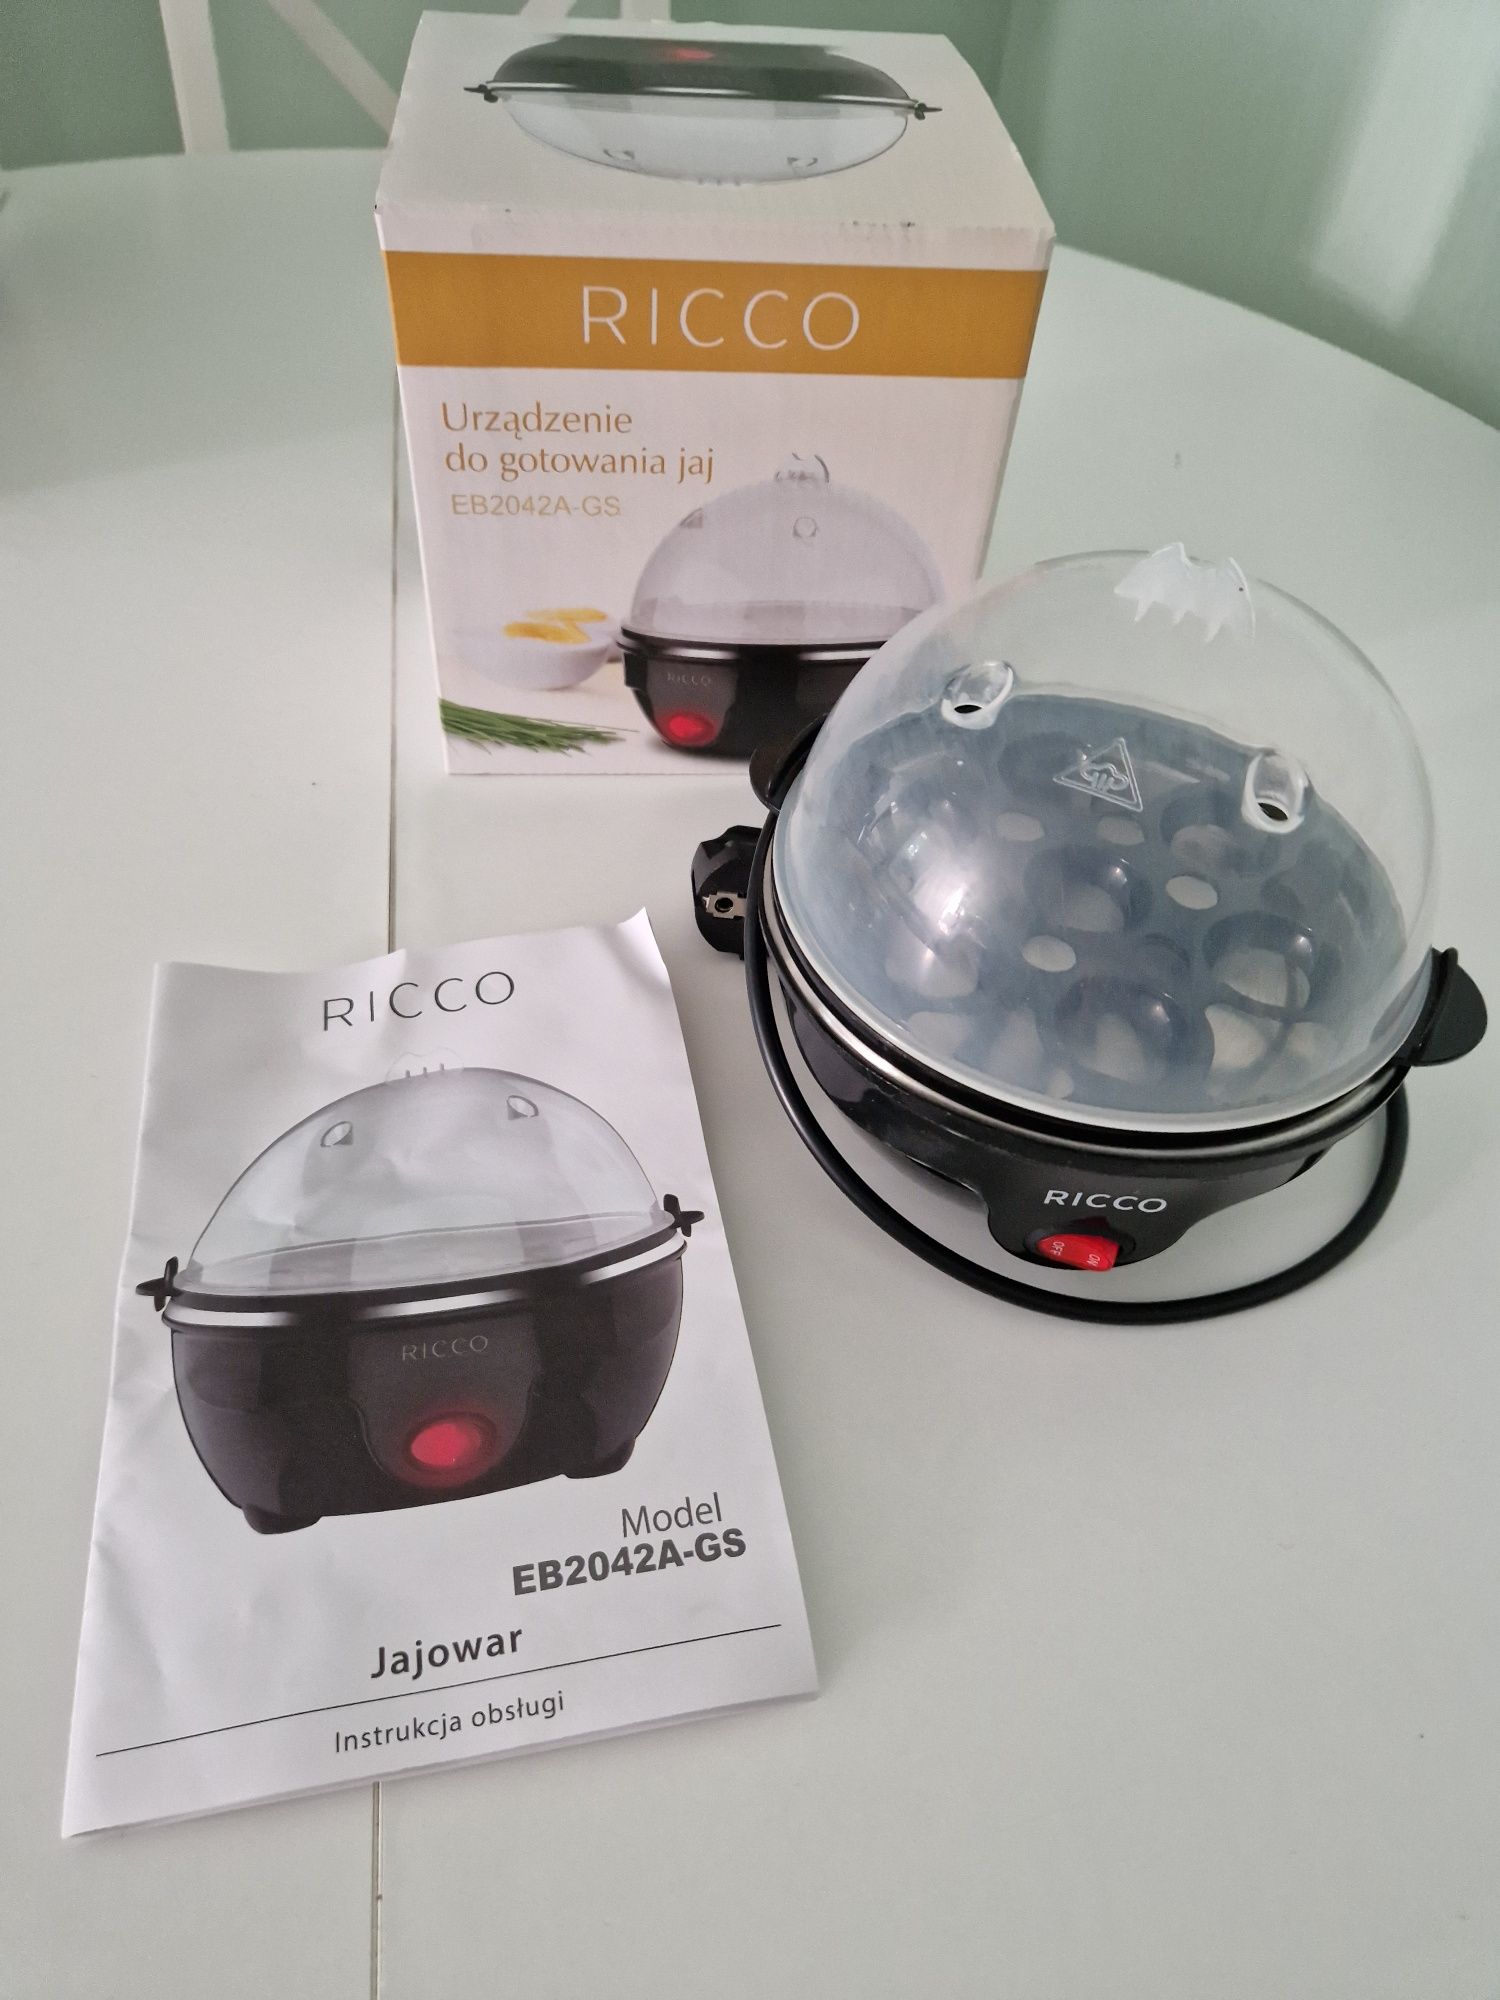 Jajowar Ricco urządzenie do gotowania jaj